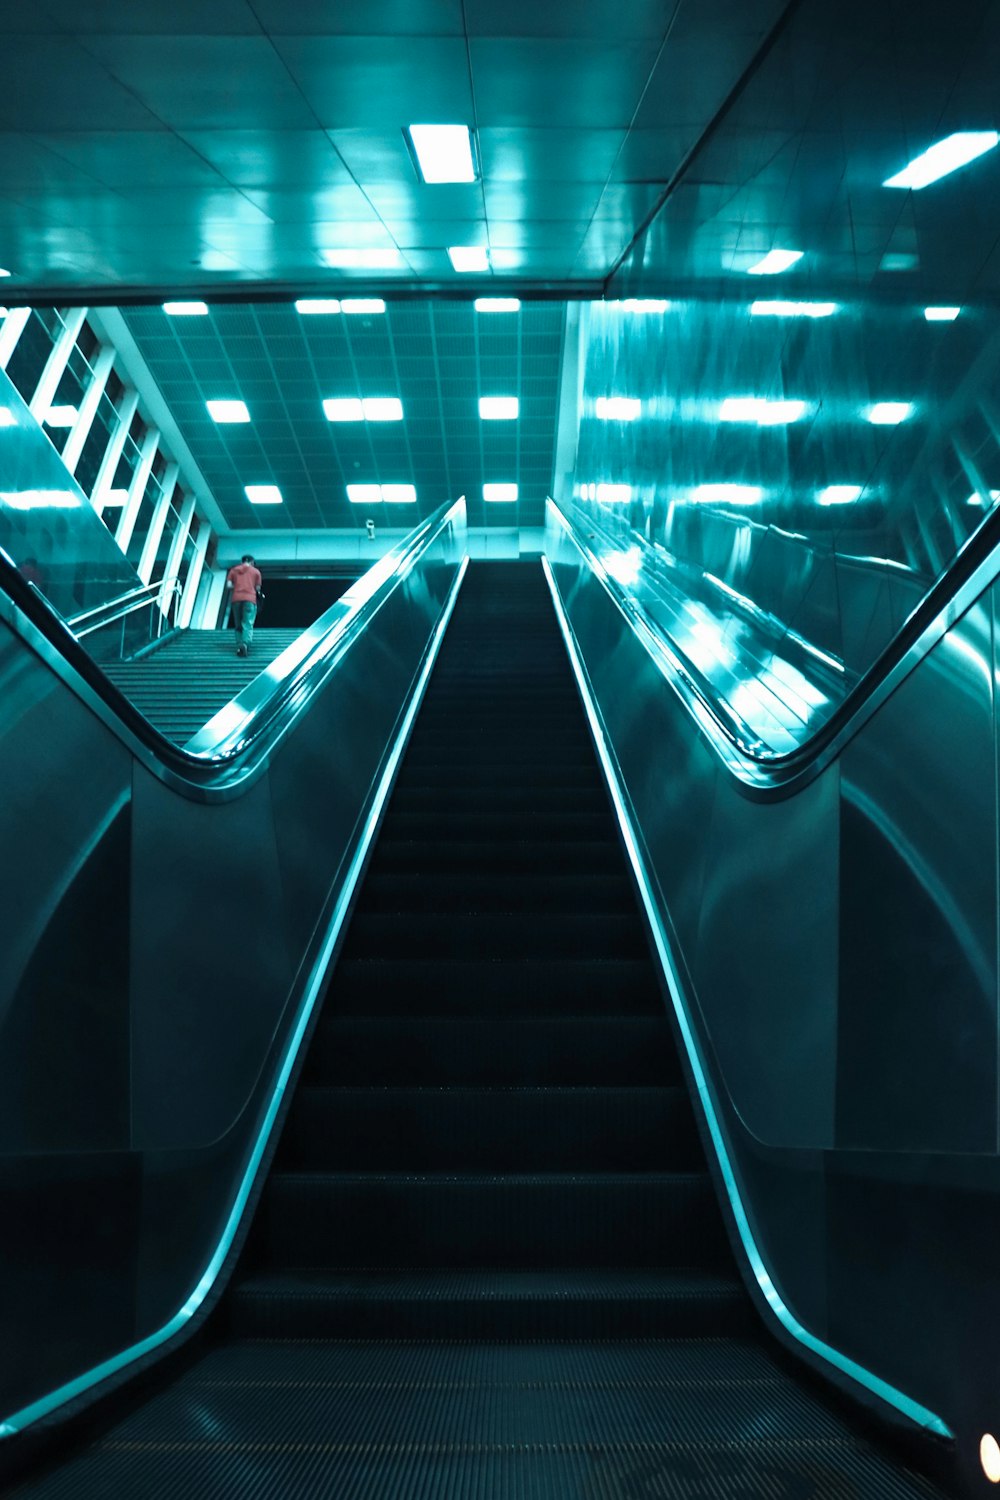 Una escalera mecánica en una estación de metro con luces azules